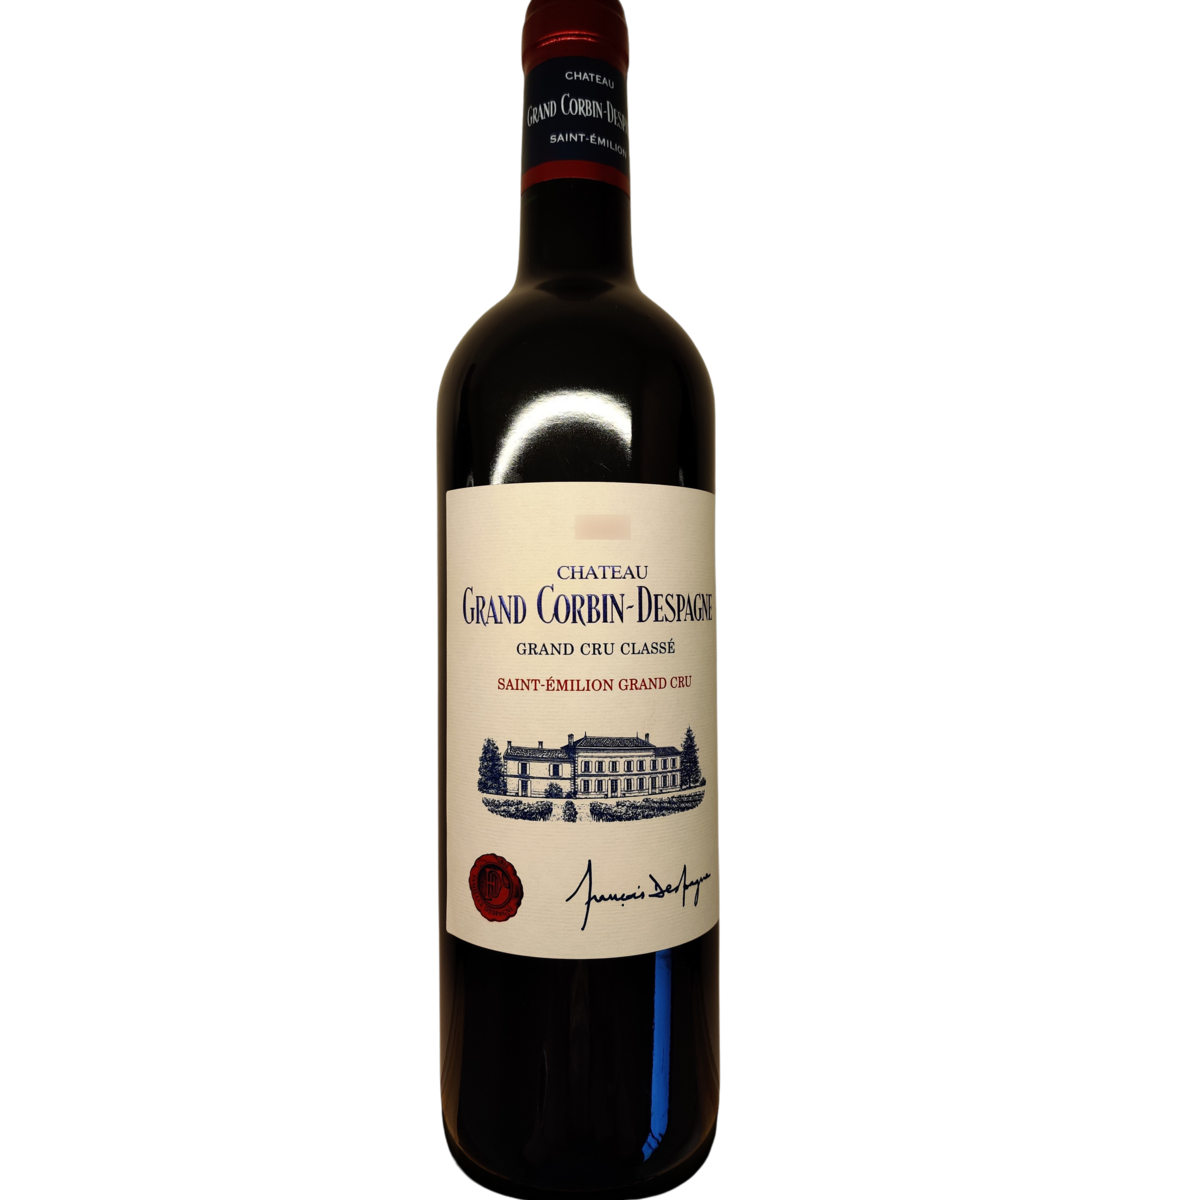 Vin rouge AOP Saint-Emilion grand cru classé Château Grand Corbin-Despagne 2018 75cl